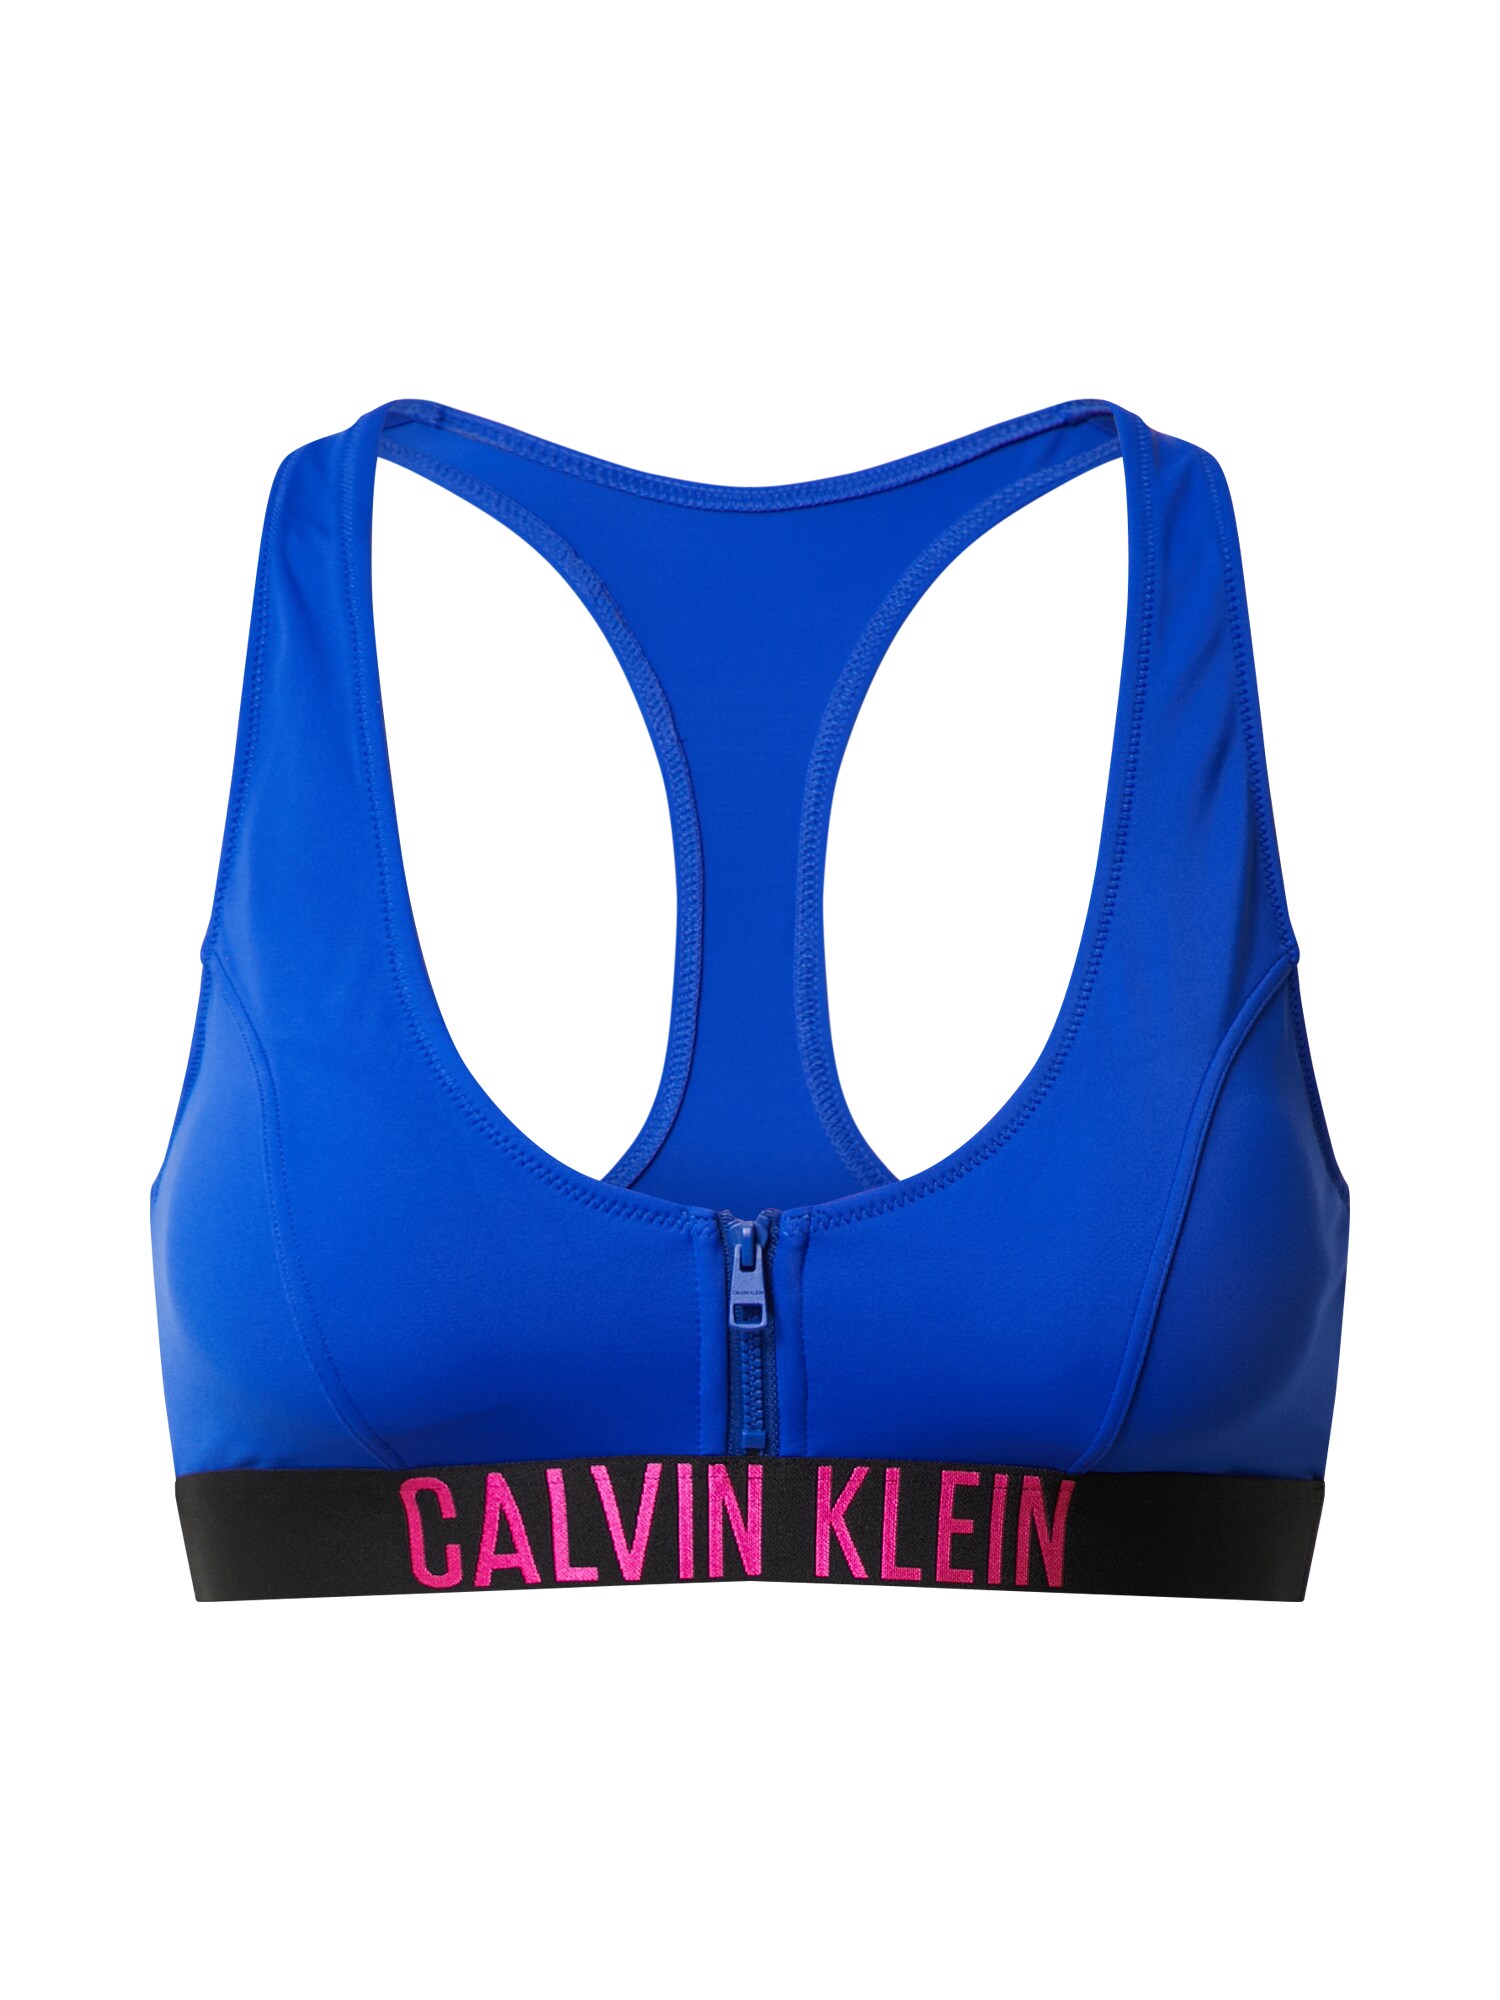 Calvin Klein Swimwear Bikinio viršutinė dalis  šviesiai raudona / mėlyna